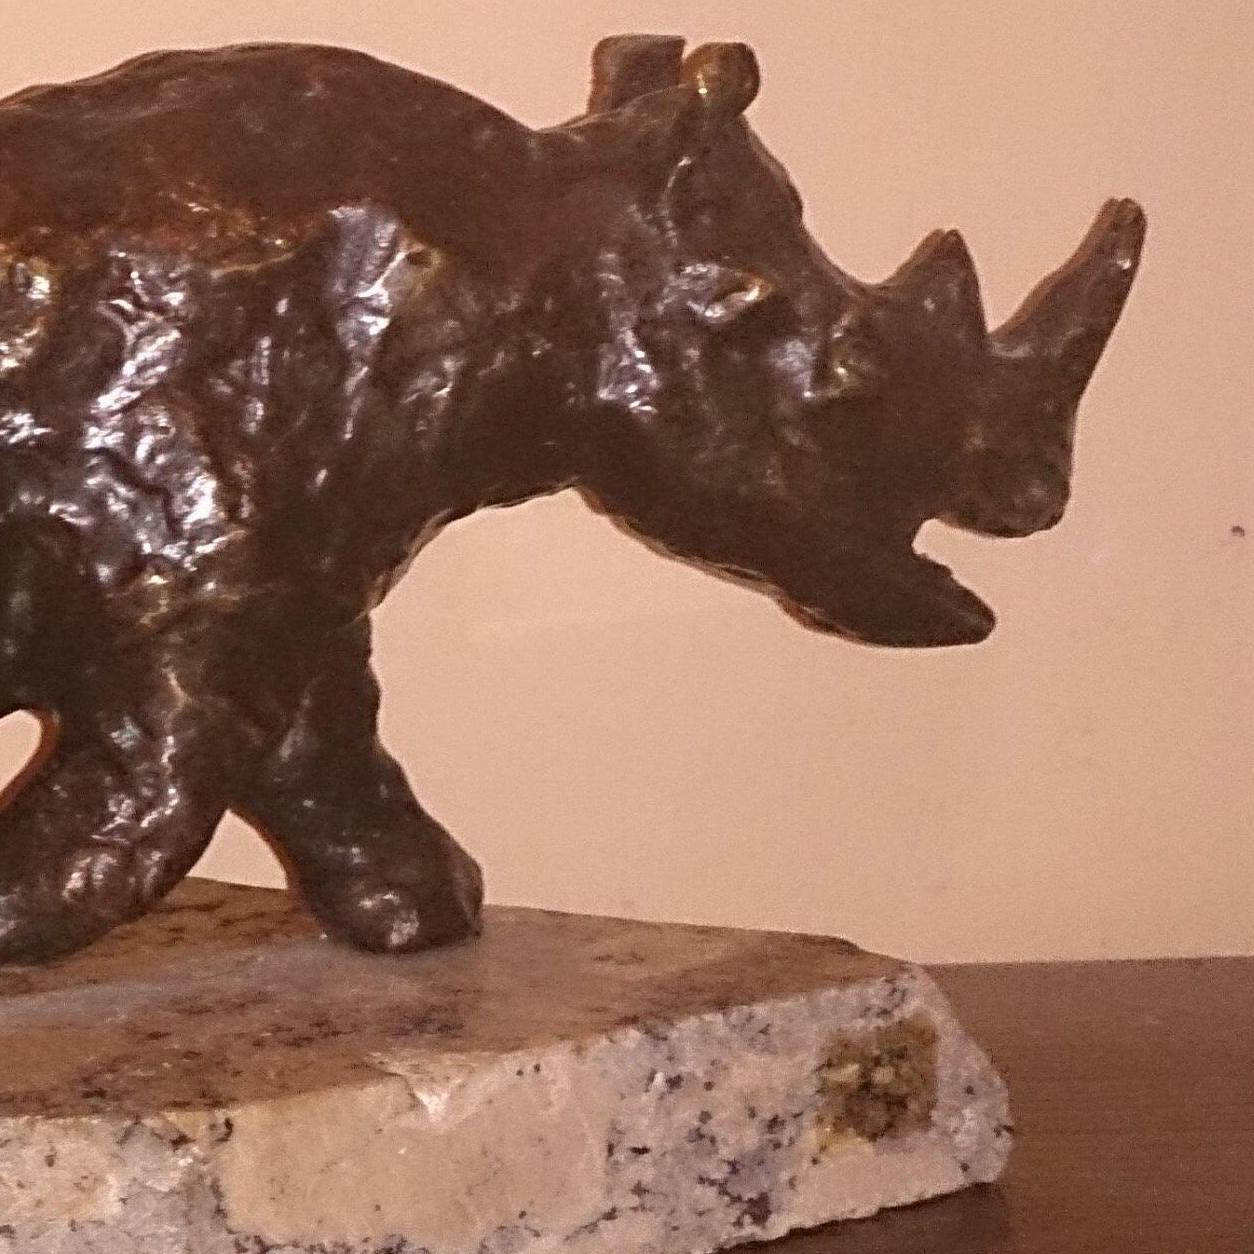 Polnische modernistische expressionistische Rhinoceros-Skulptur aus Rhino Bronze (Moderne), Sculpture, von Dominik Albinski